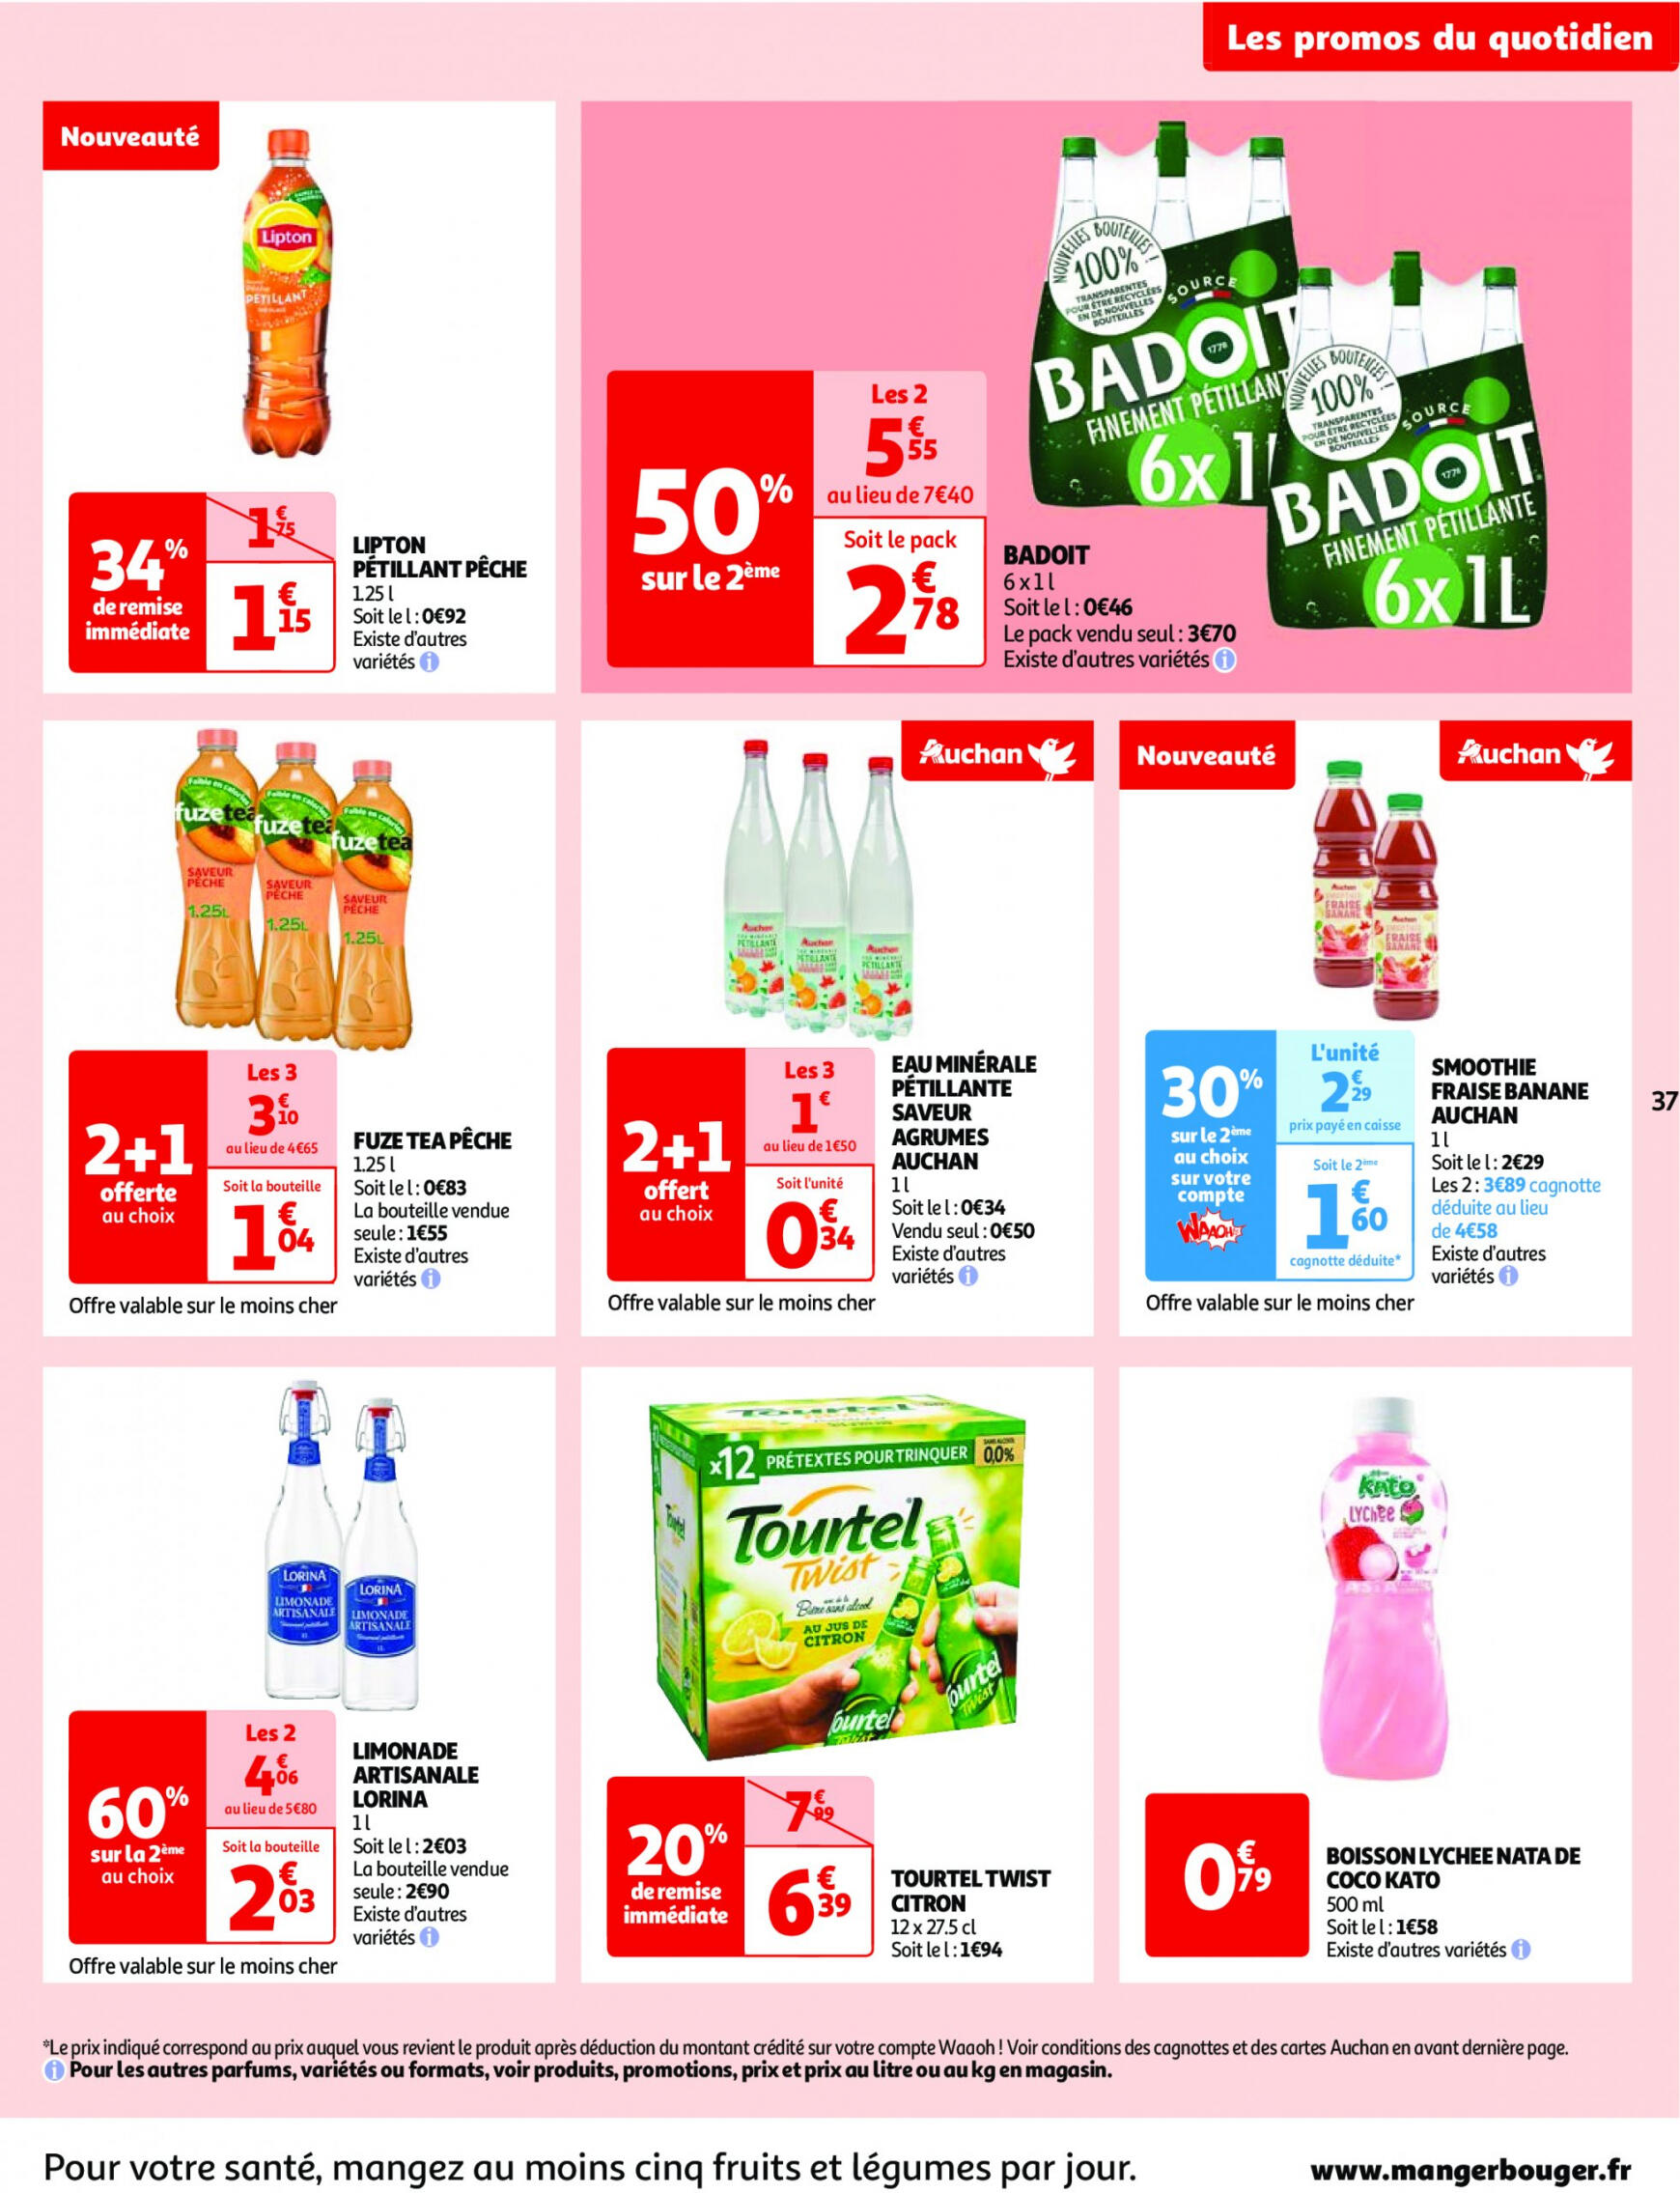 auchan - Prospectus Auchan actuel 14.05. - 21.05. - page: 37